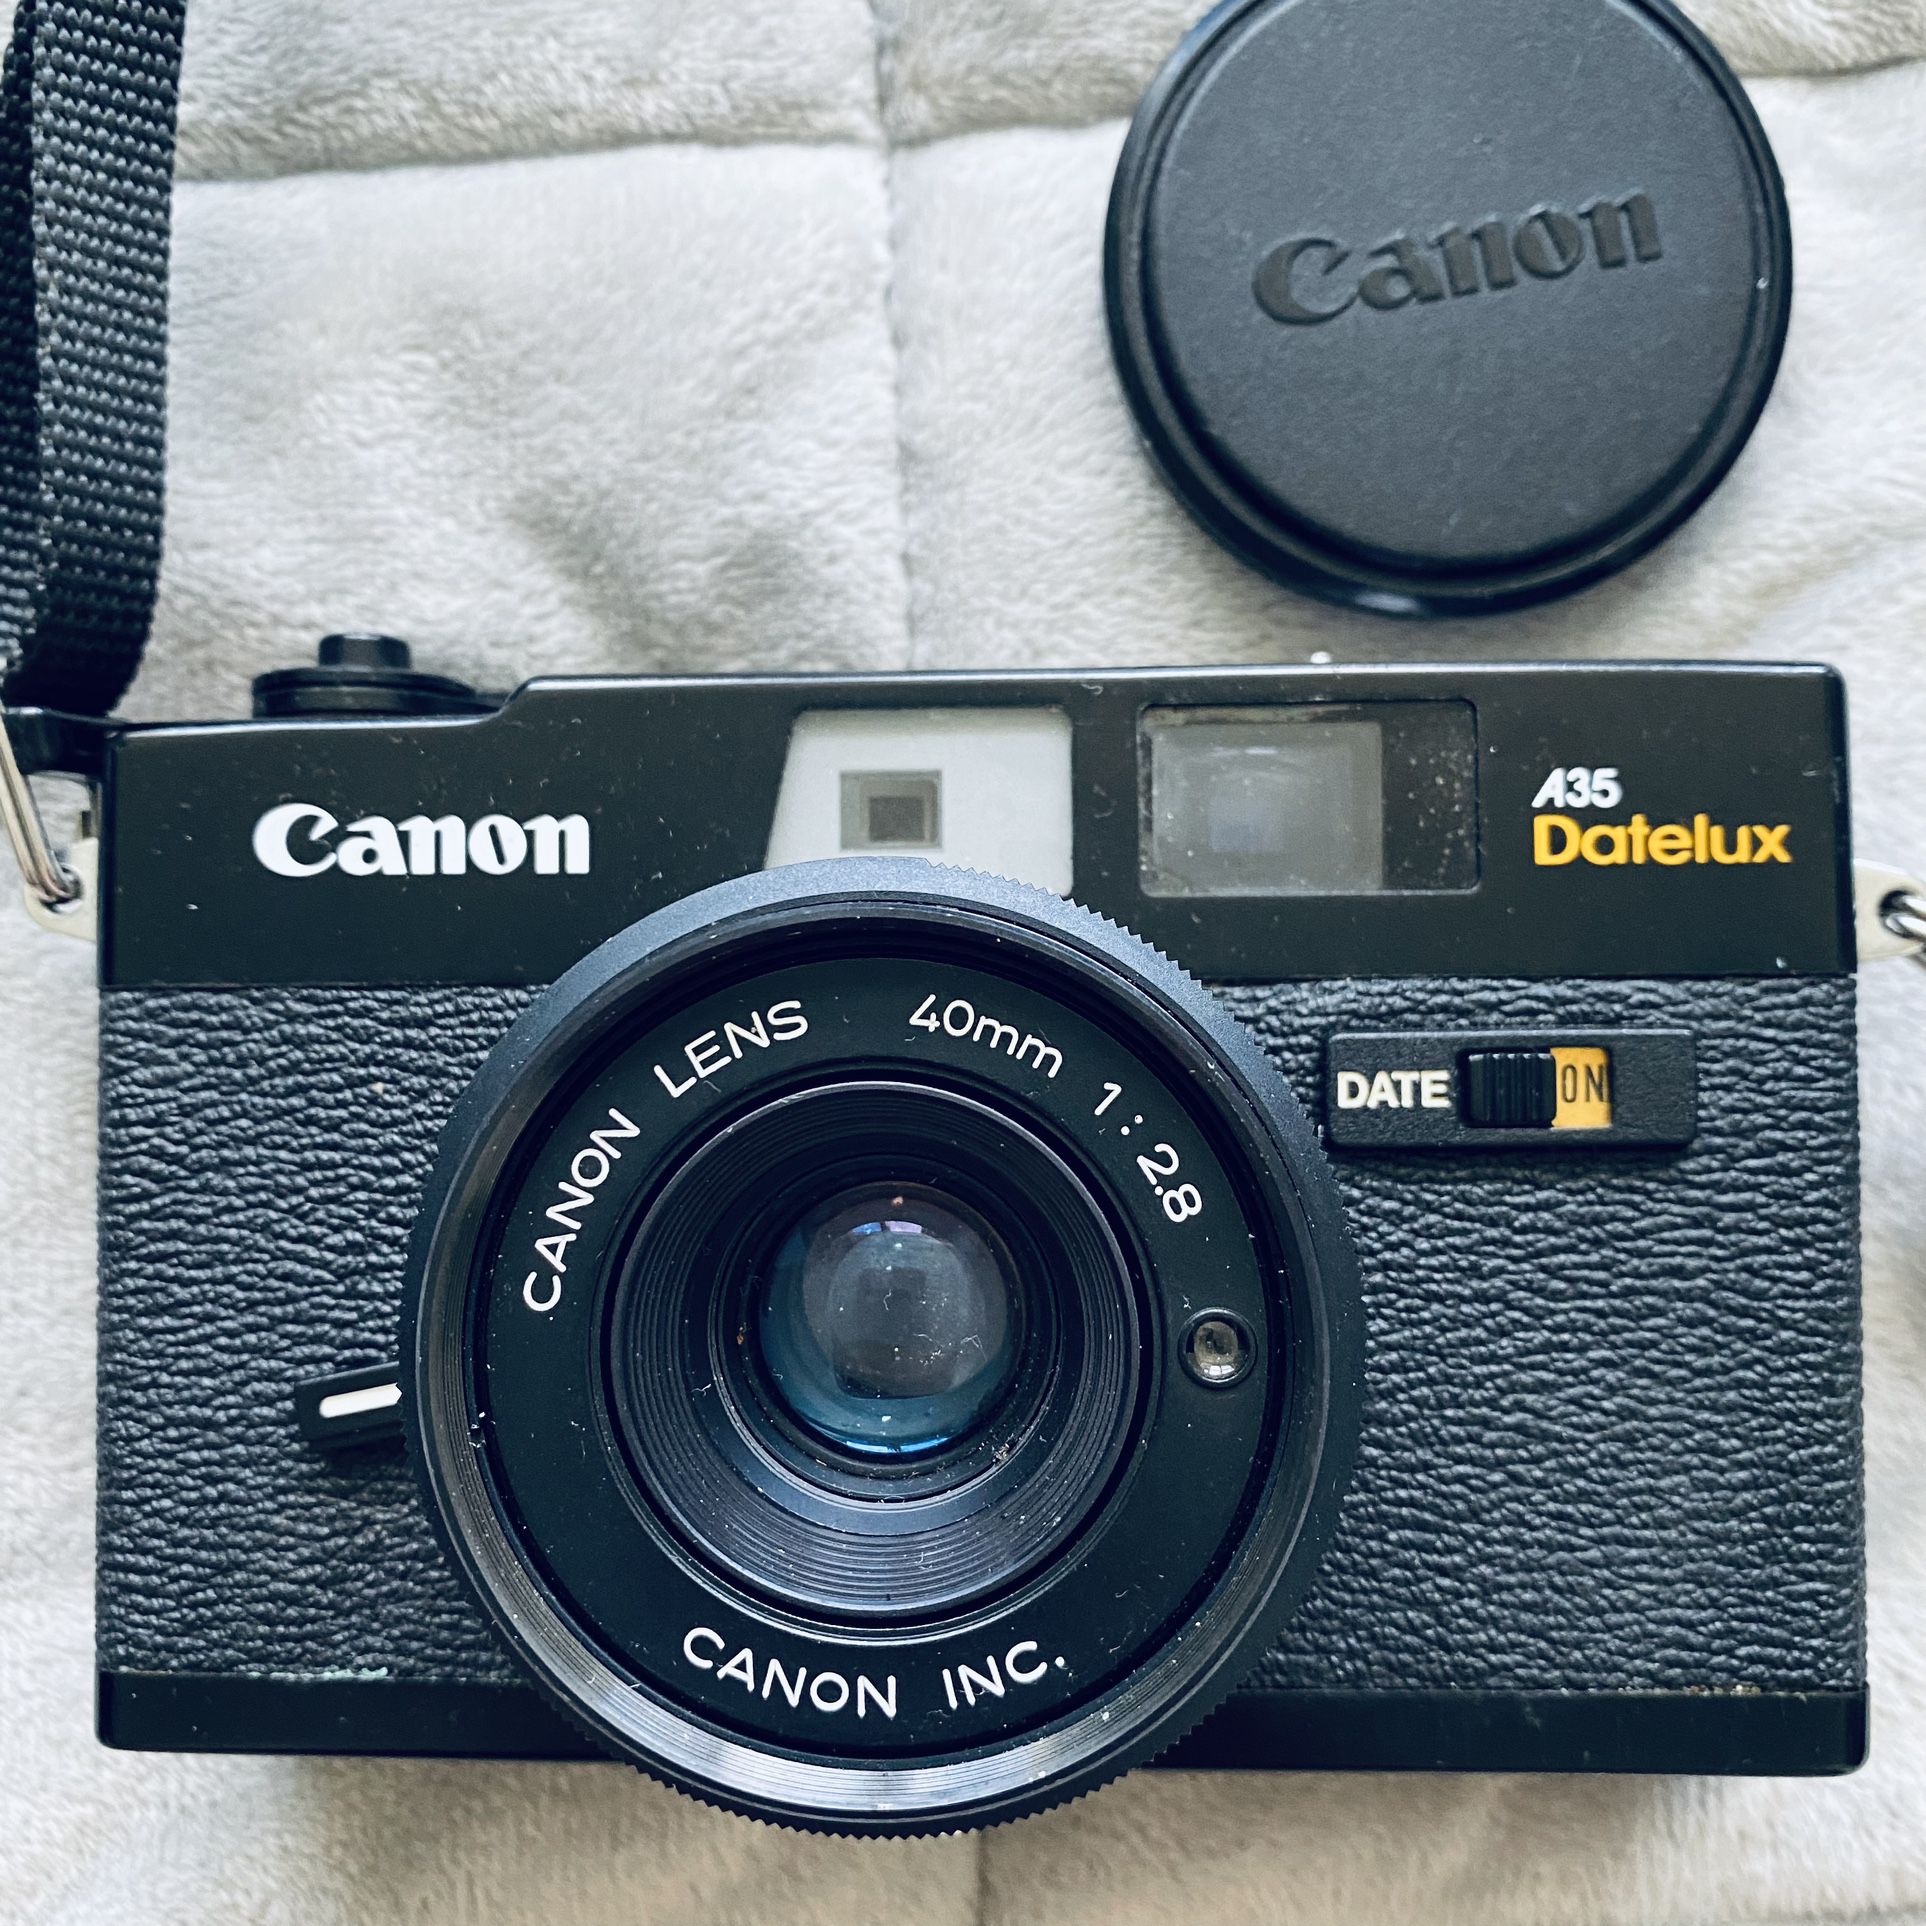 Canon A35 Datelux 季節のおすすめ商品 - フィルムカメラ